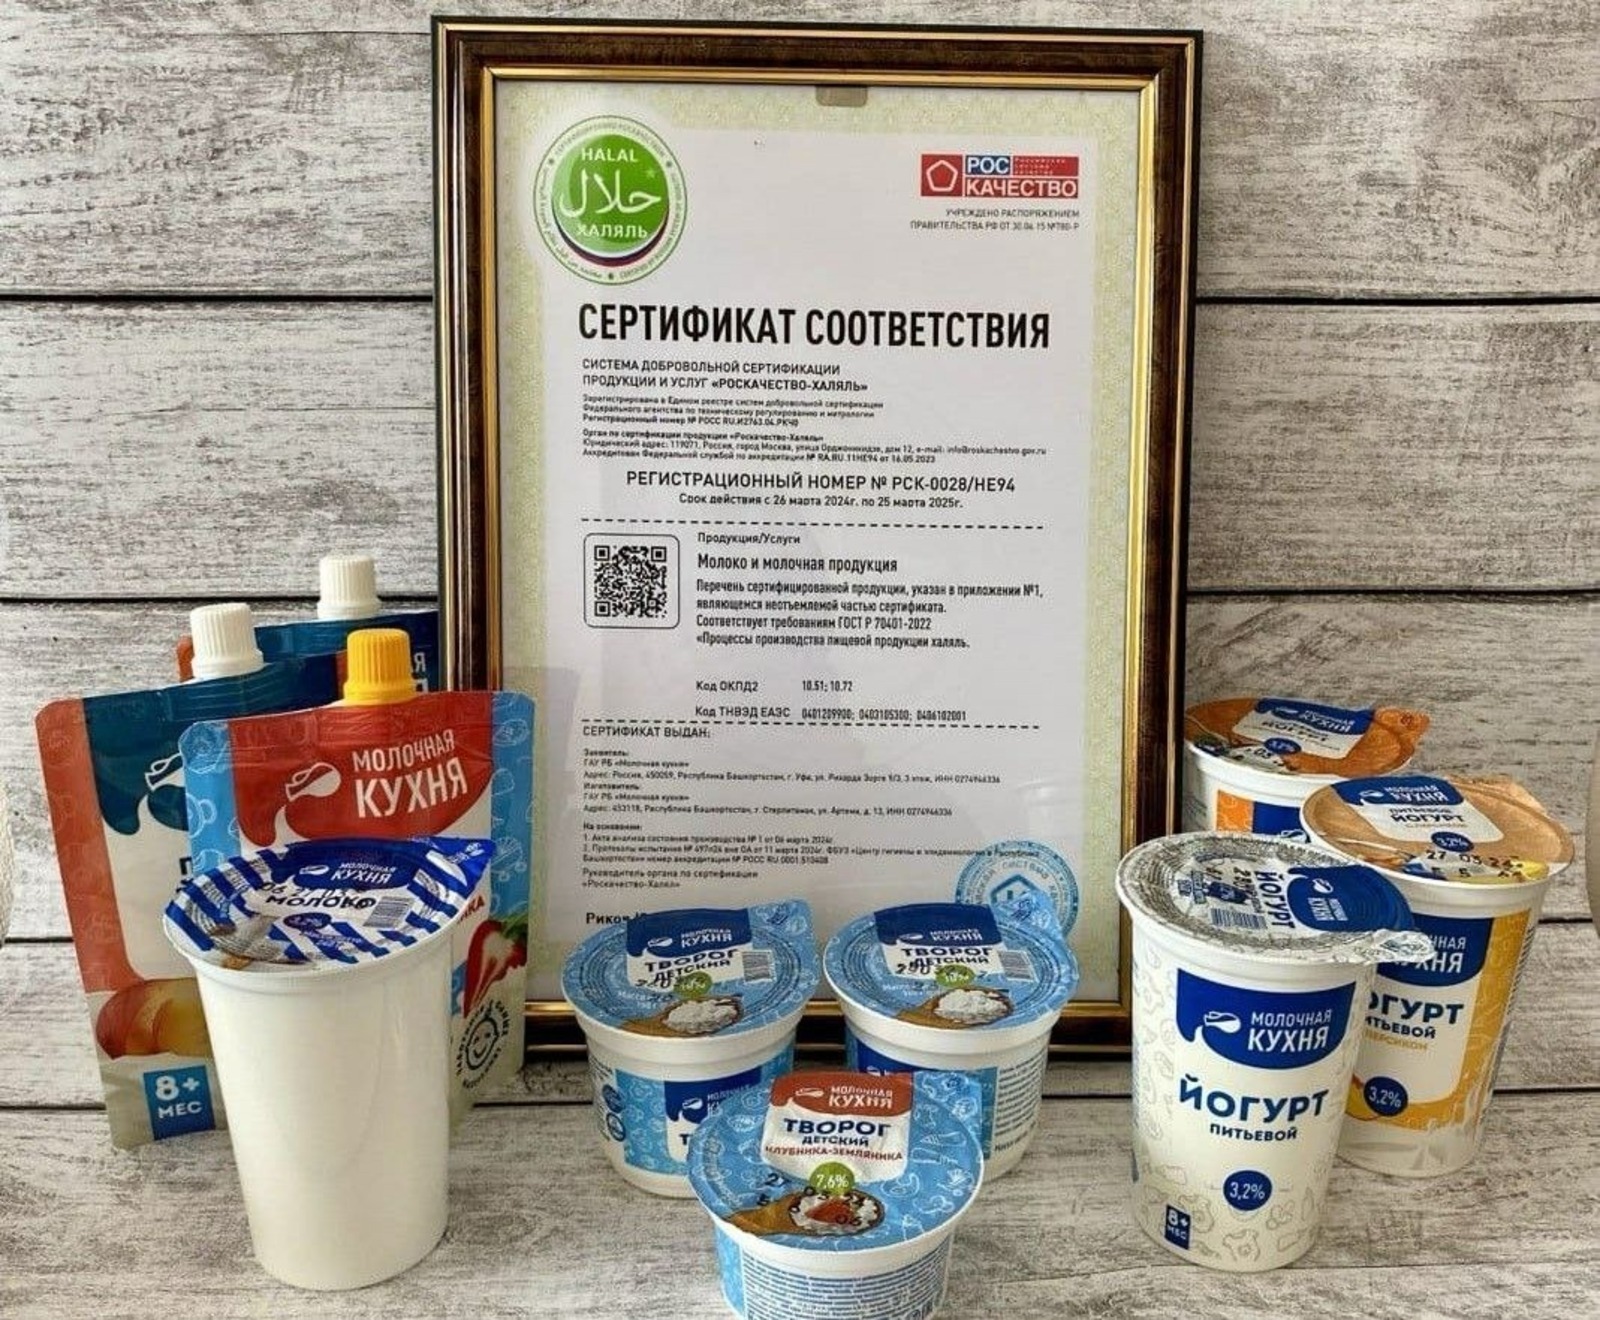 «Молочная кухня» Башкирии получила сертификат «Роскачество-Халяль» нового образца